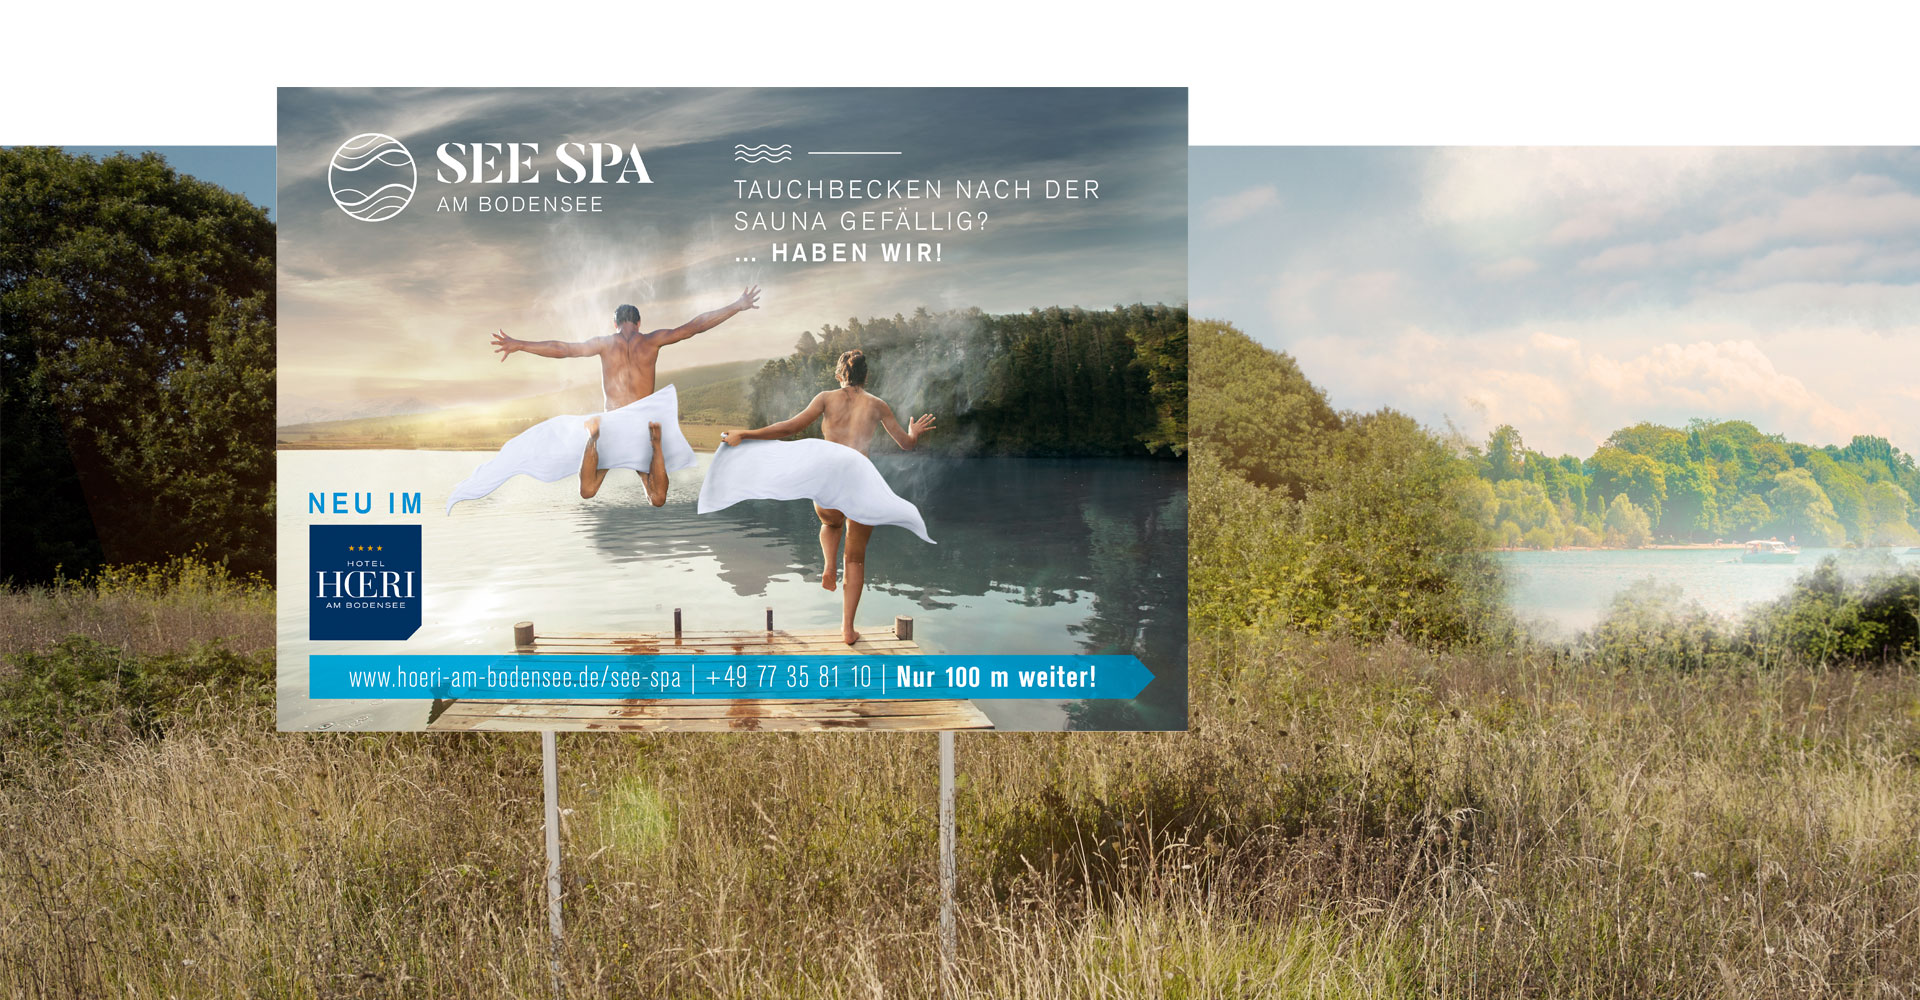 OPUS Marketing / Projekte / See Spa / Großflächenwerbung / Plakat